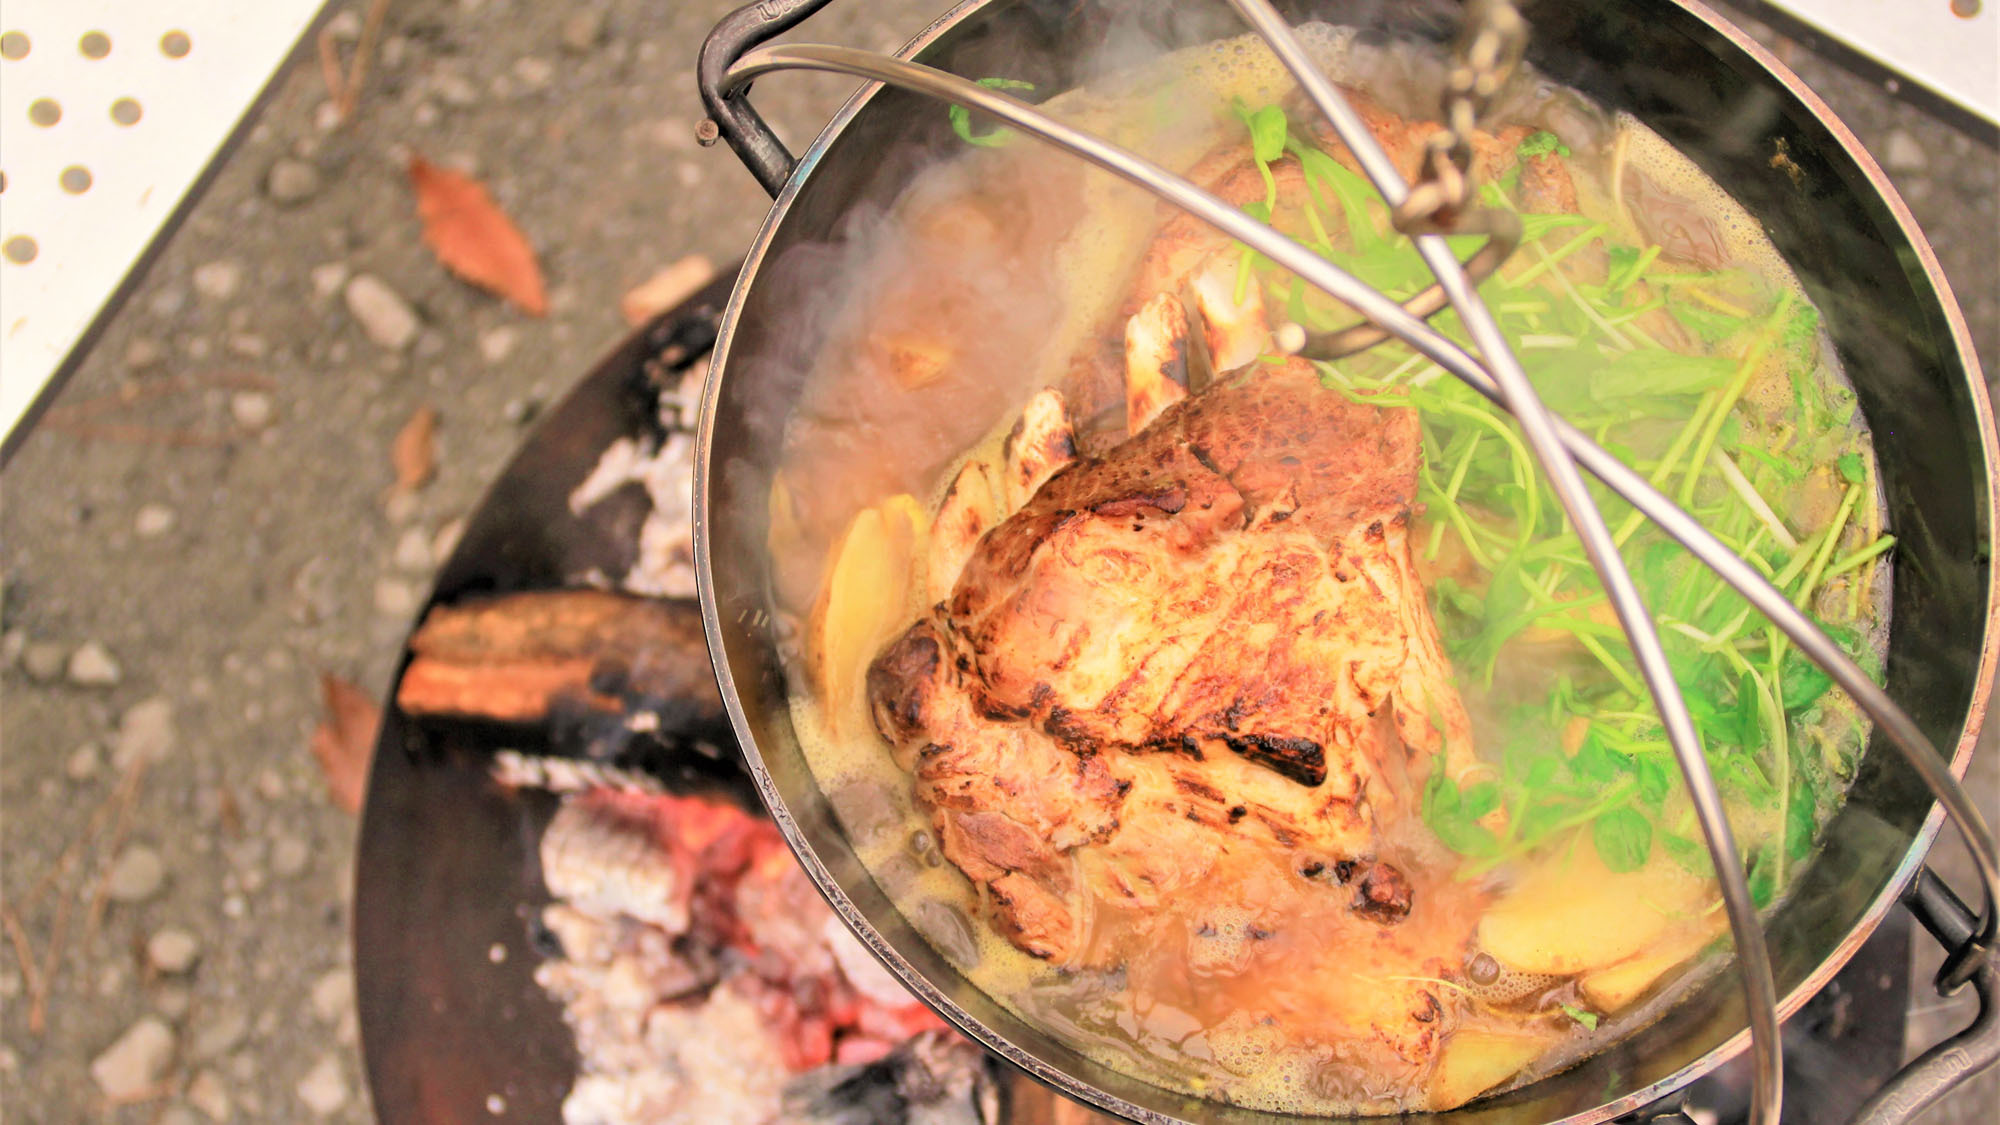 スペアリブのブロックをほろほろに煮込んだダッチオーブンで食べるカレー鍋です♪